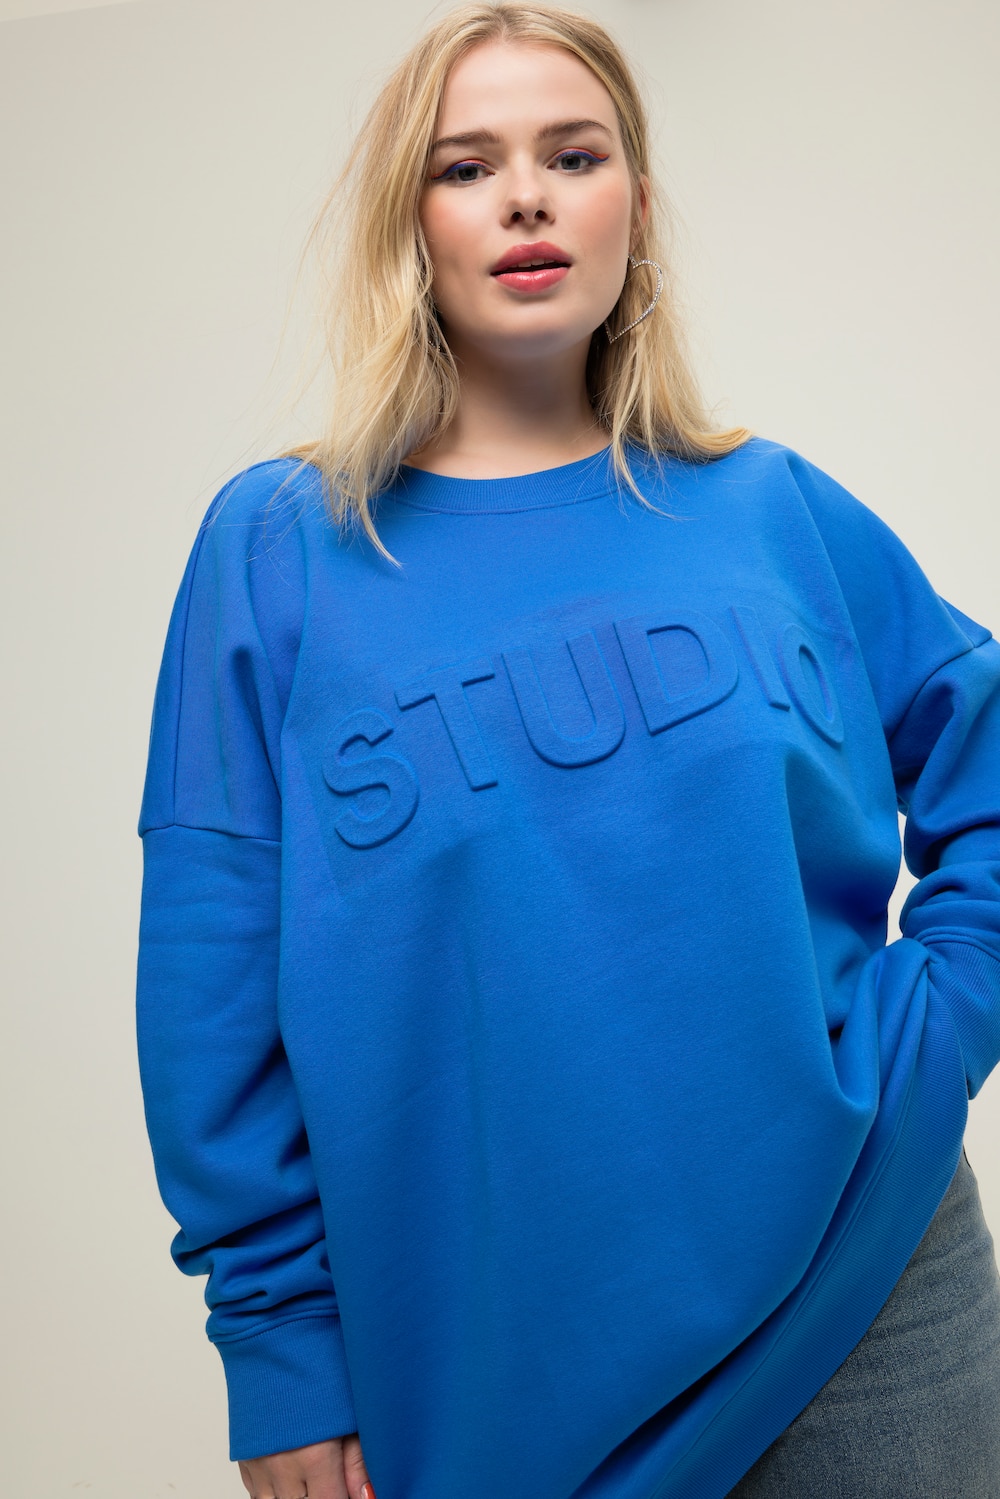 Grote Maten Sweatshirt, Dames, blauw, Maat: 42/44, Katoen/Polyester, Studio Untold